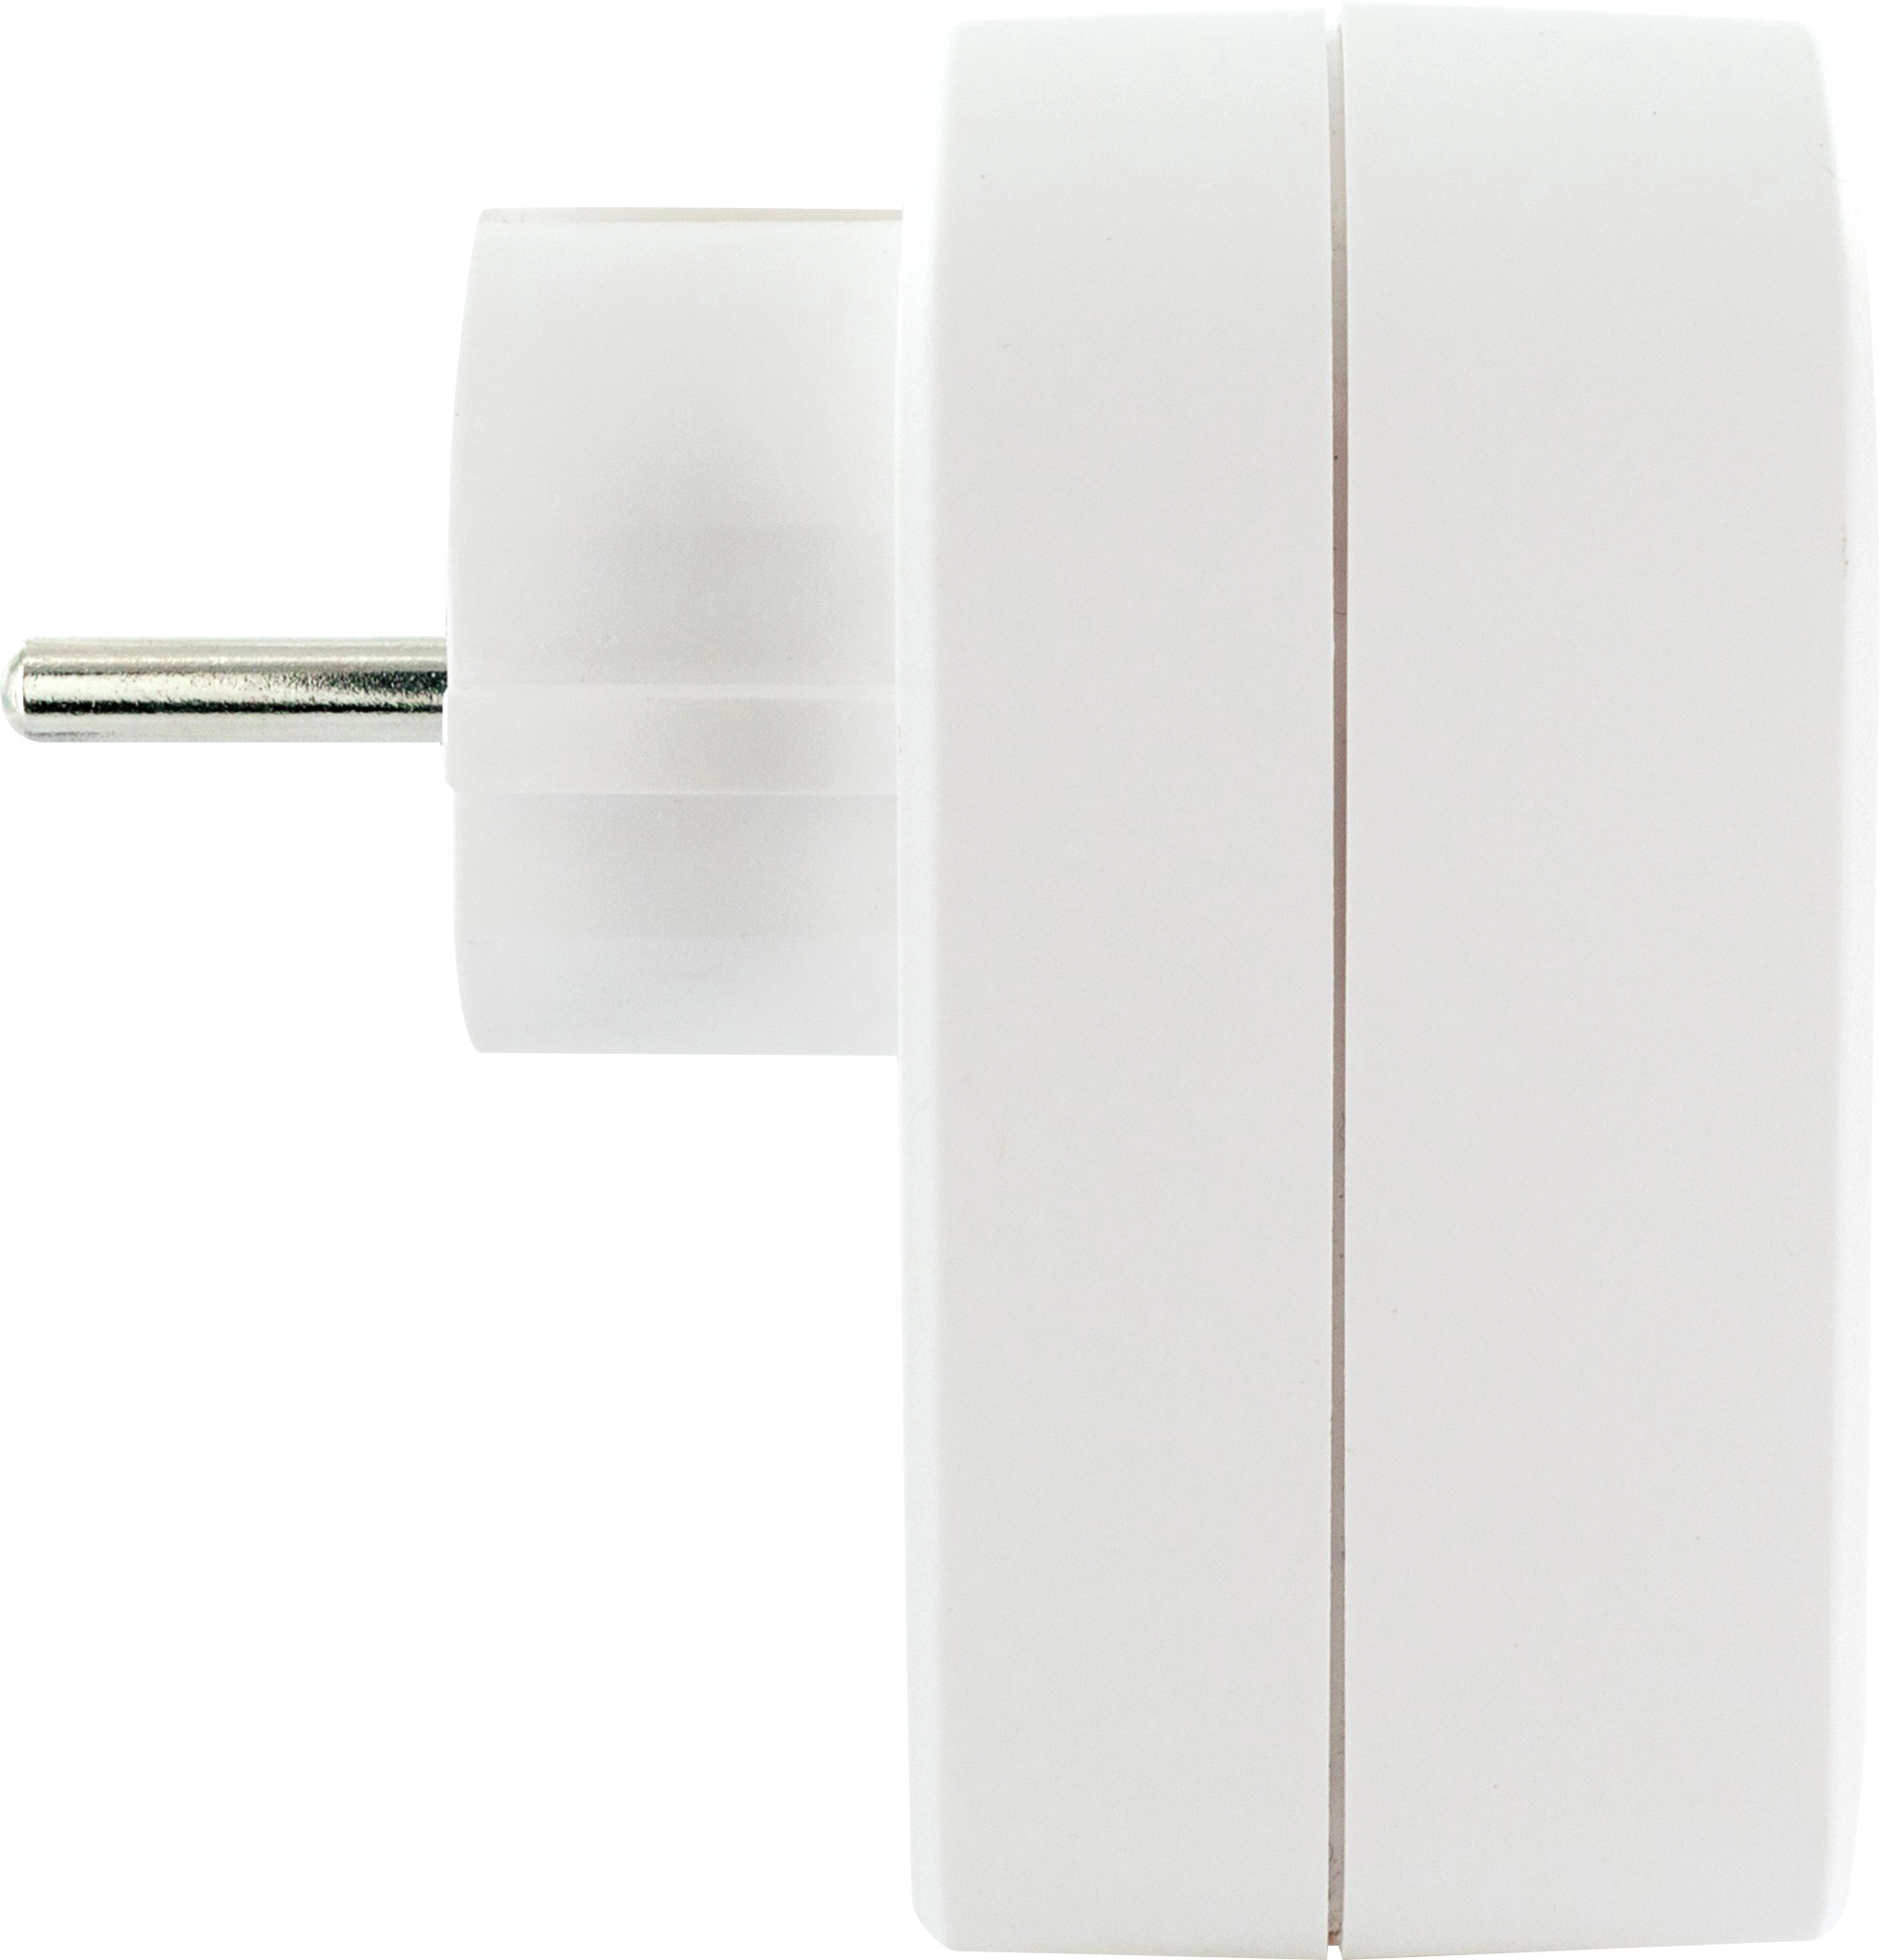 Steckdosen Ladegerät mit 2 USB Anschlüssen Weiß kaufen bei OBI